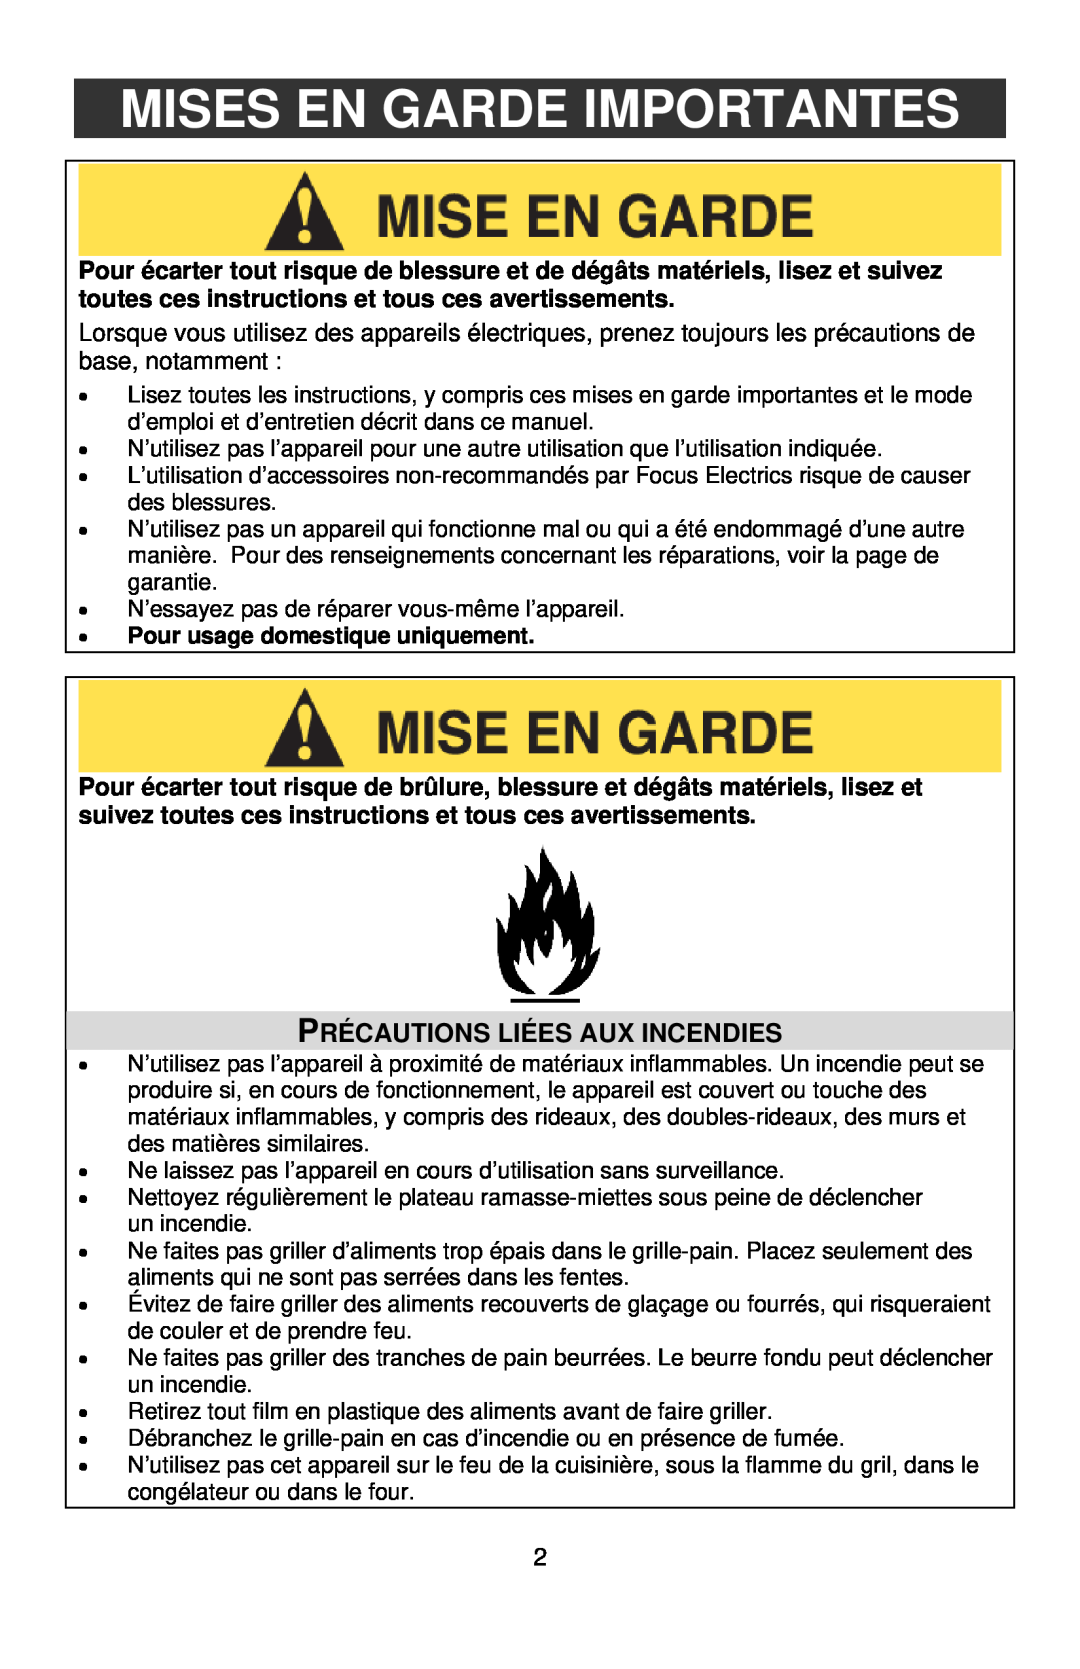 West Bend L5559C instruction manual Mises En Garde Importantes, Précautions Liées Aux Incendies 